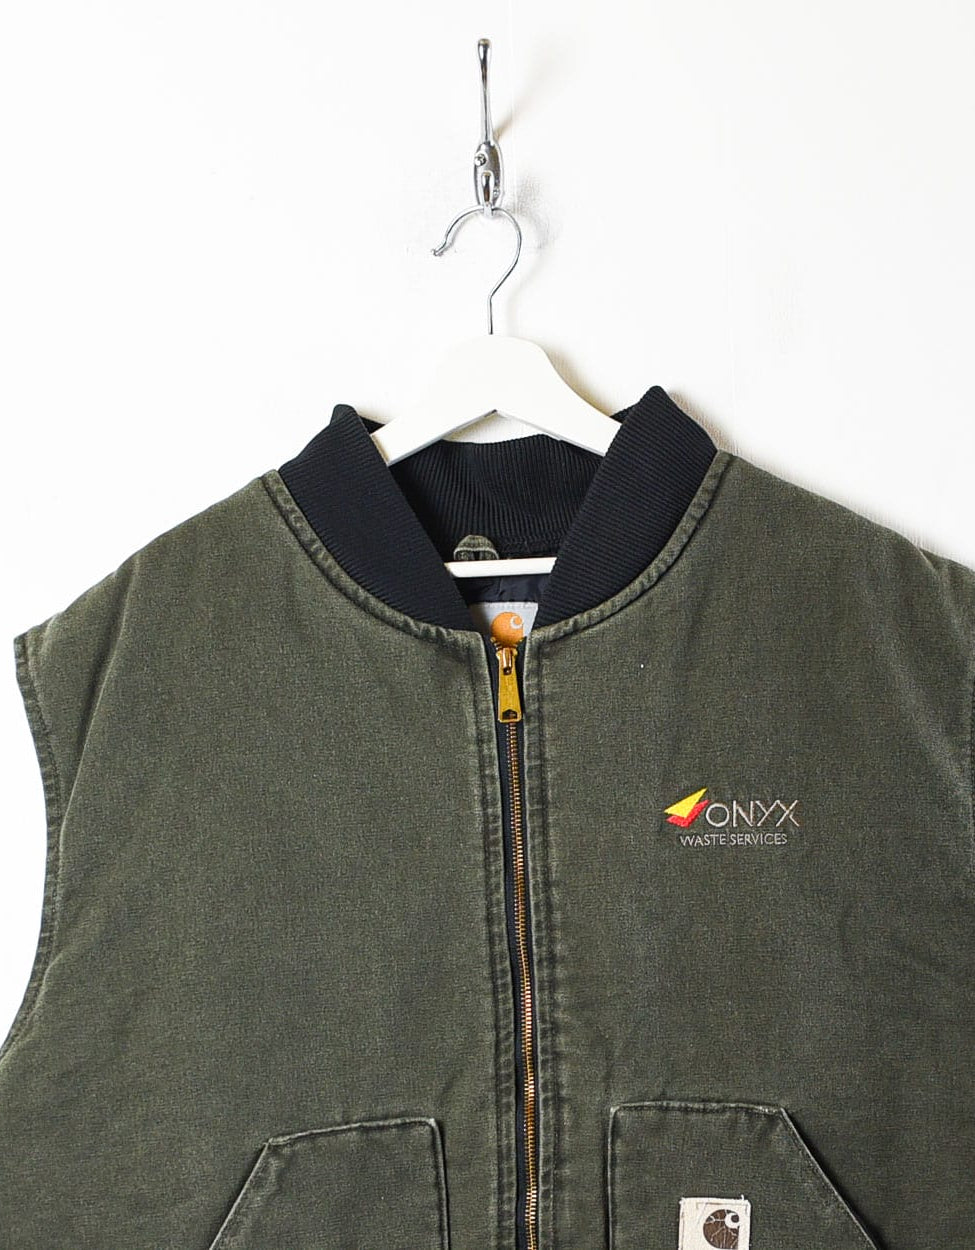 Khaki Carhartt Workwear Jacket Vest - XXXXX-Large